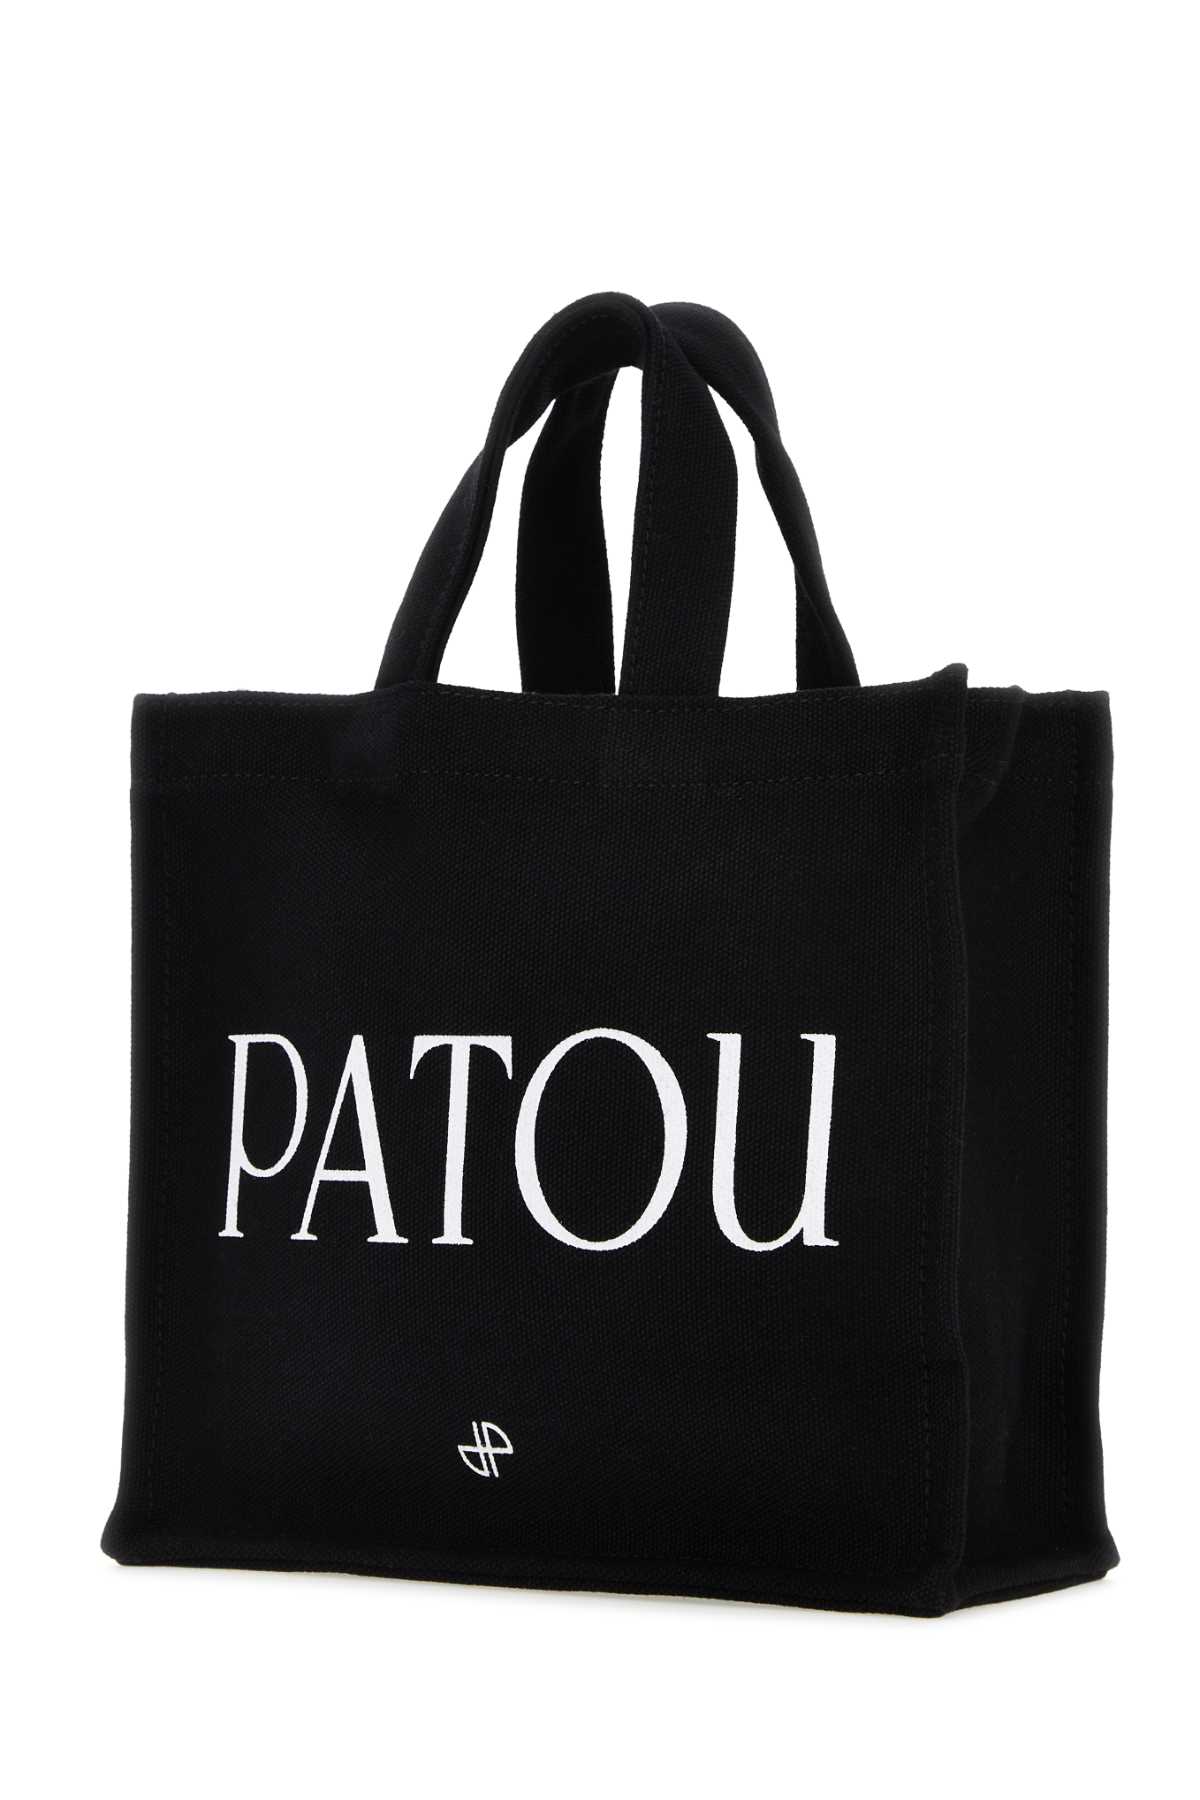 Patou Black Cotton Shopping Bag In 999b